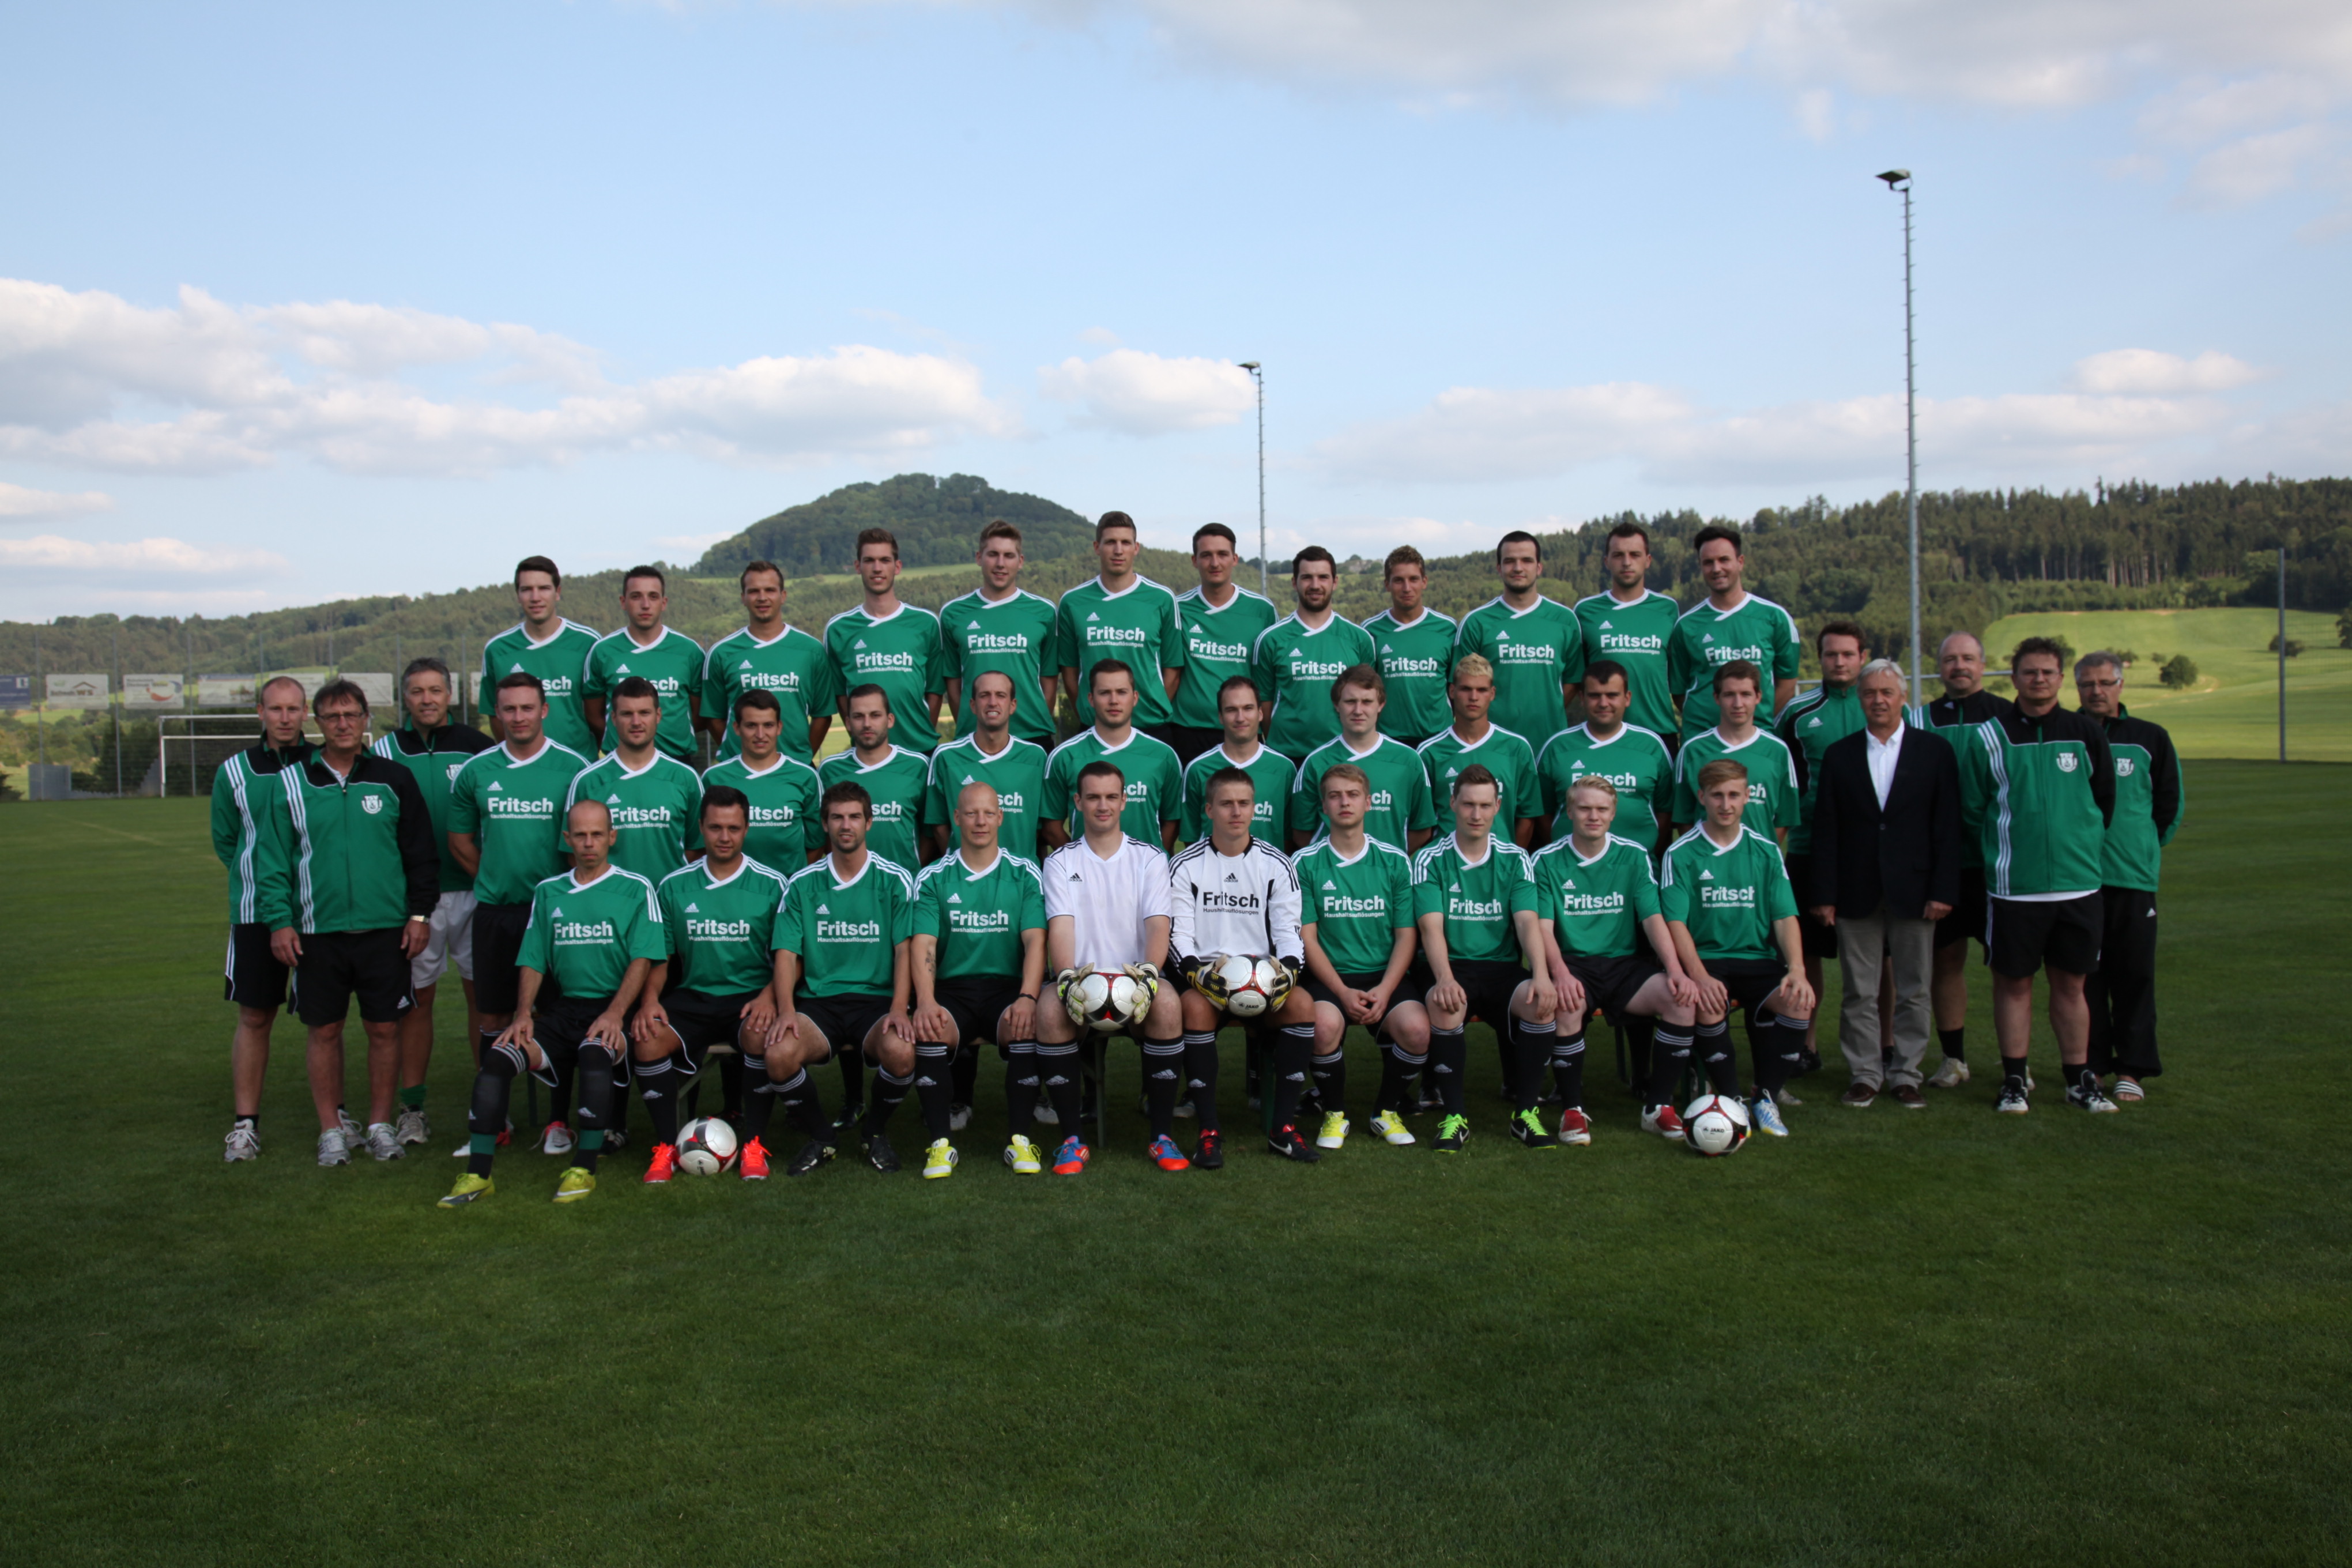 Mannschaftsfoto/Teamfoto von TSV Wschenbeuren 2